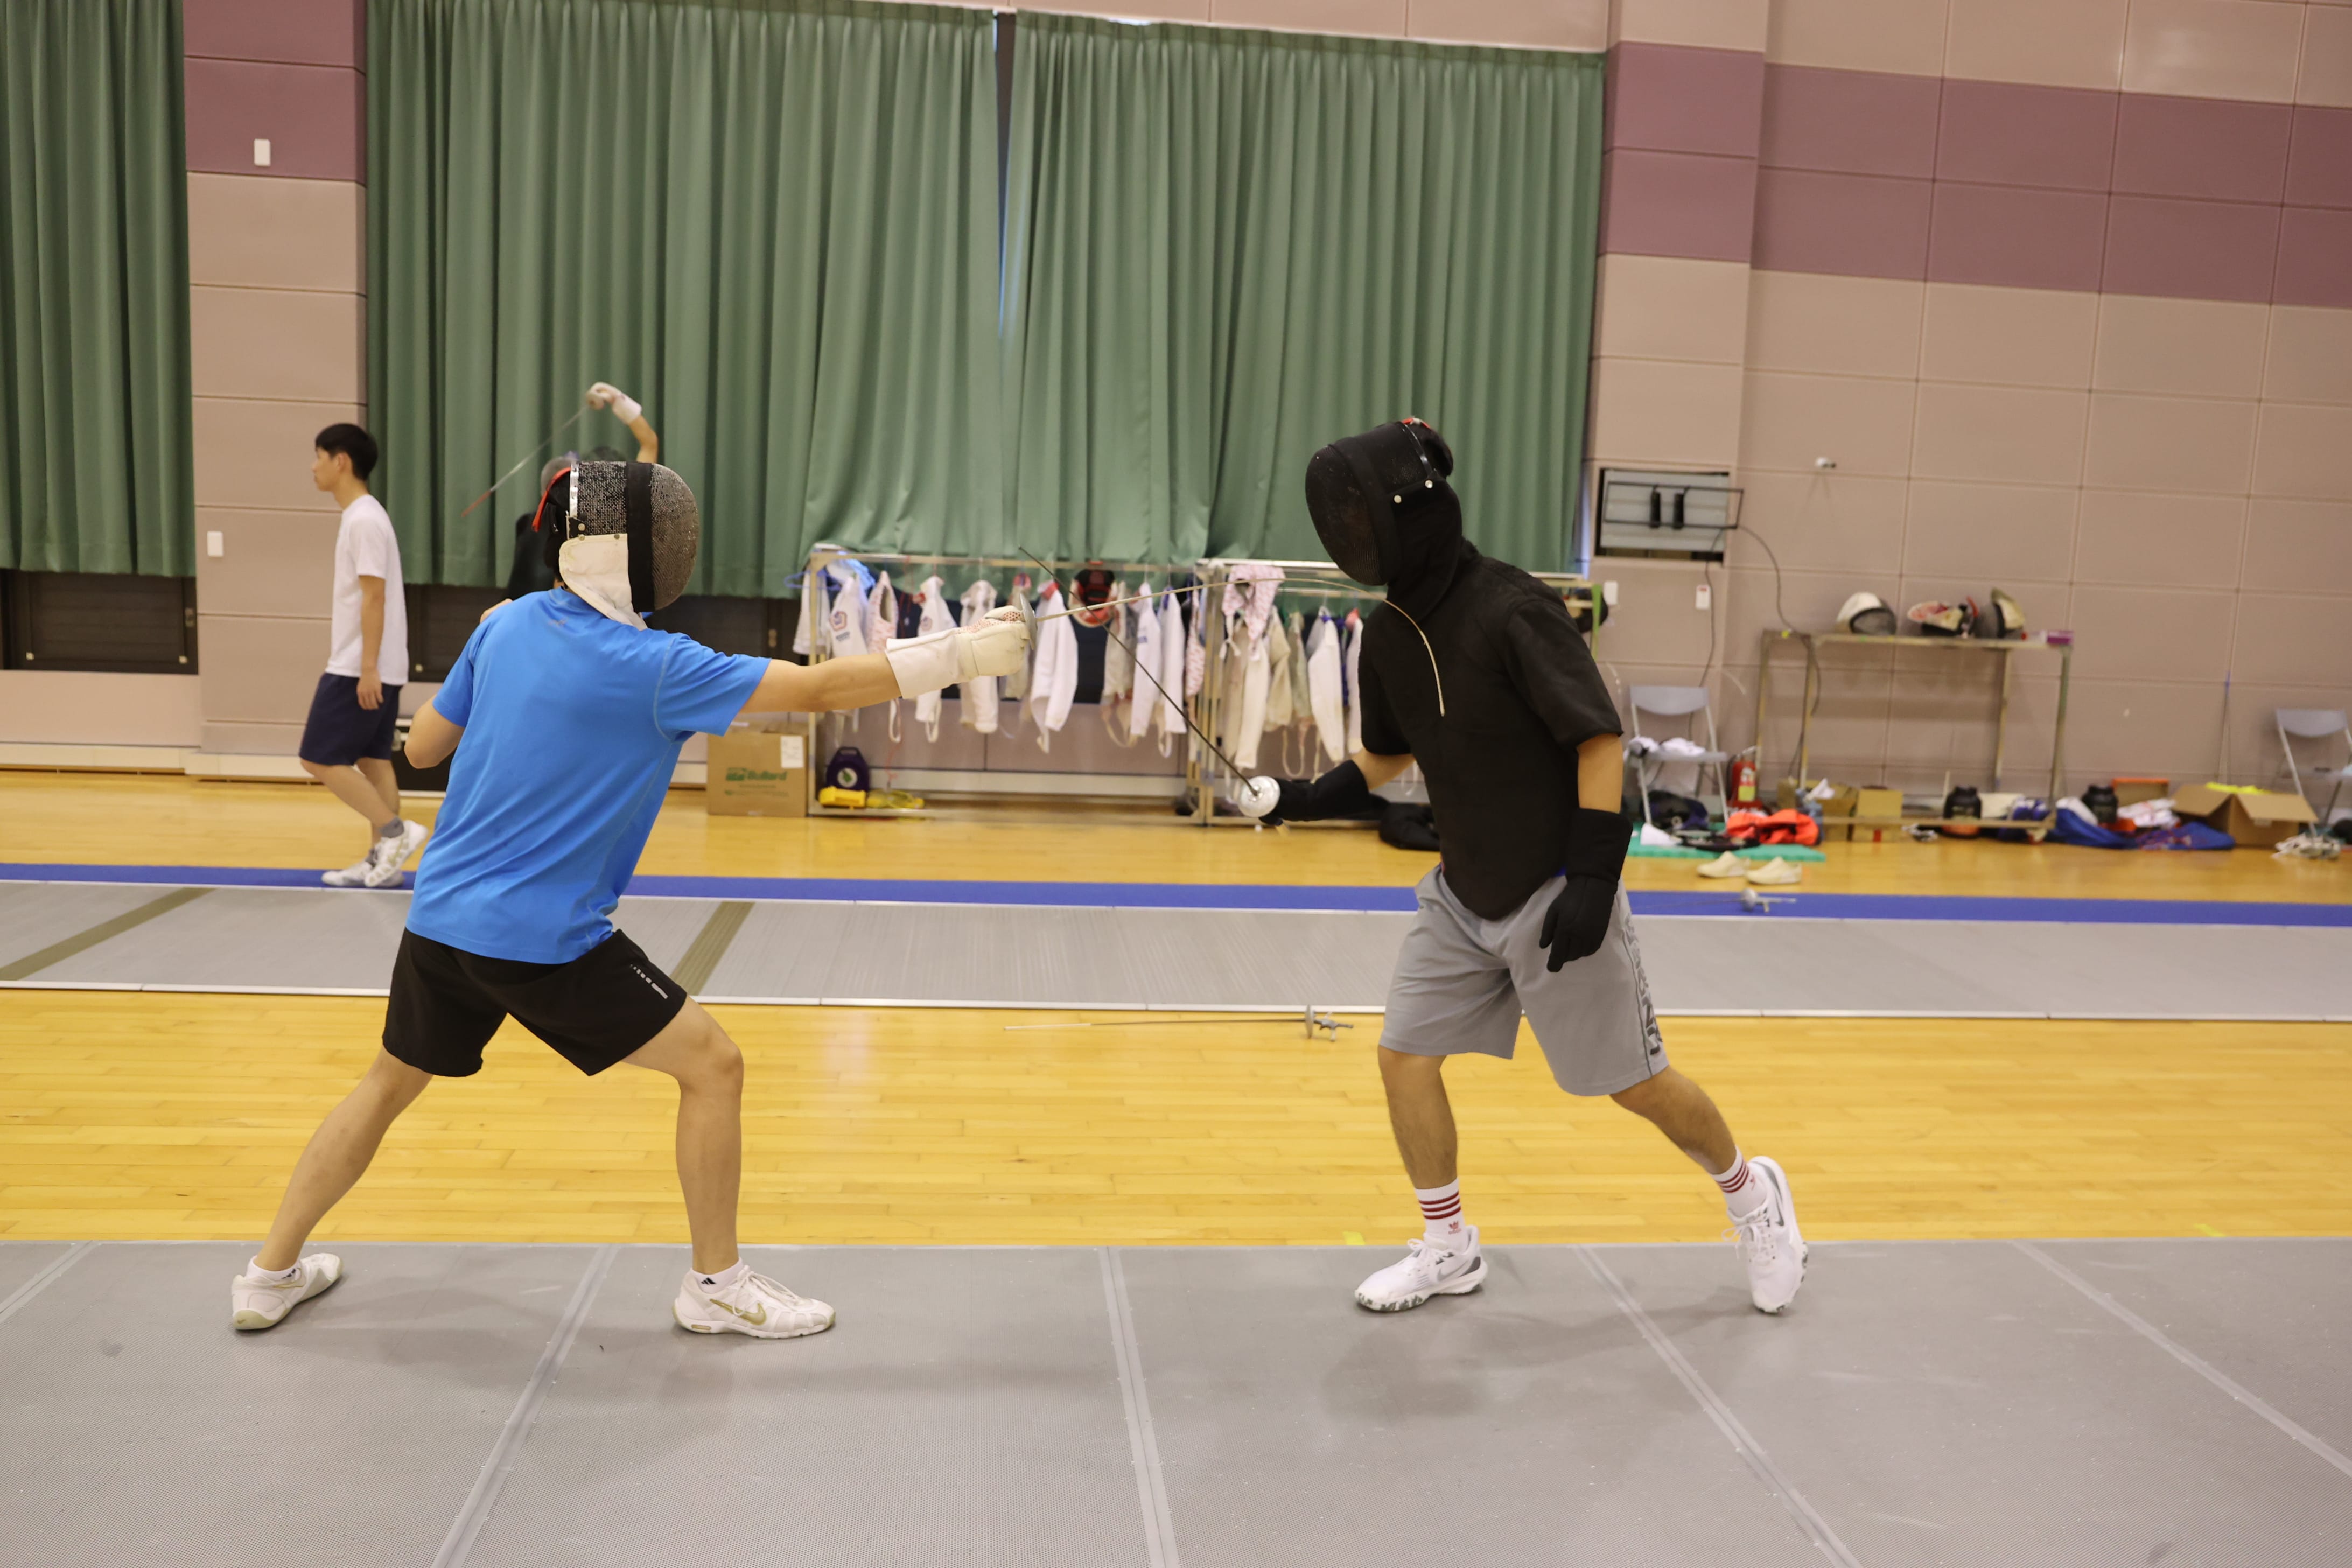 選手進行雙人對抗賽，以提升訓練成效。